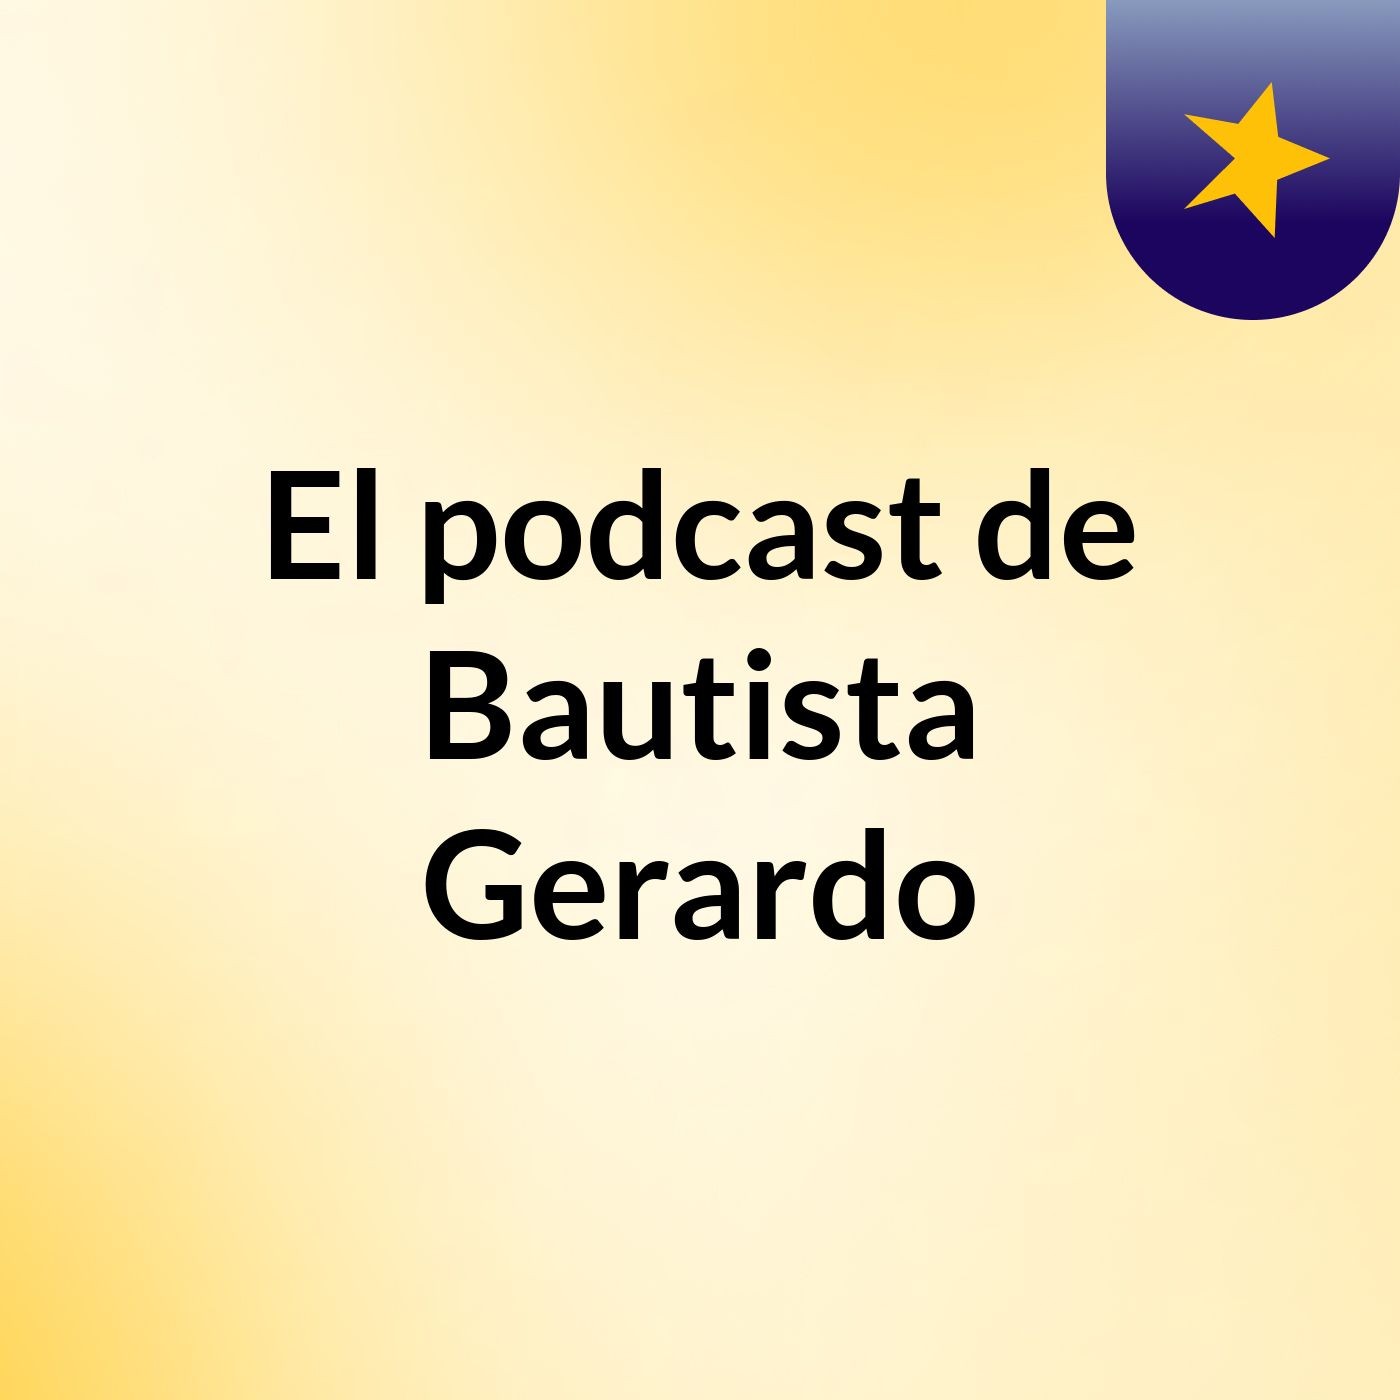 Episodio 2 - El podcast de Bautista Gerardo